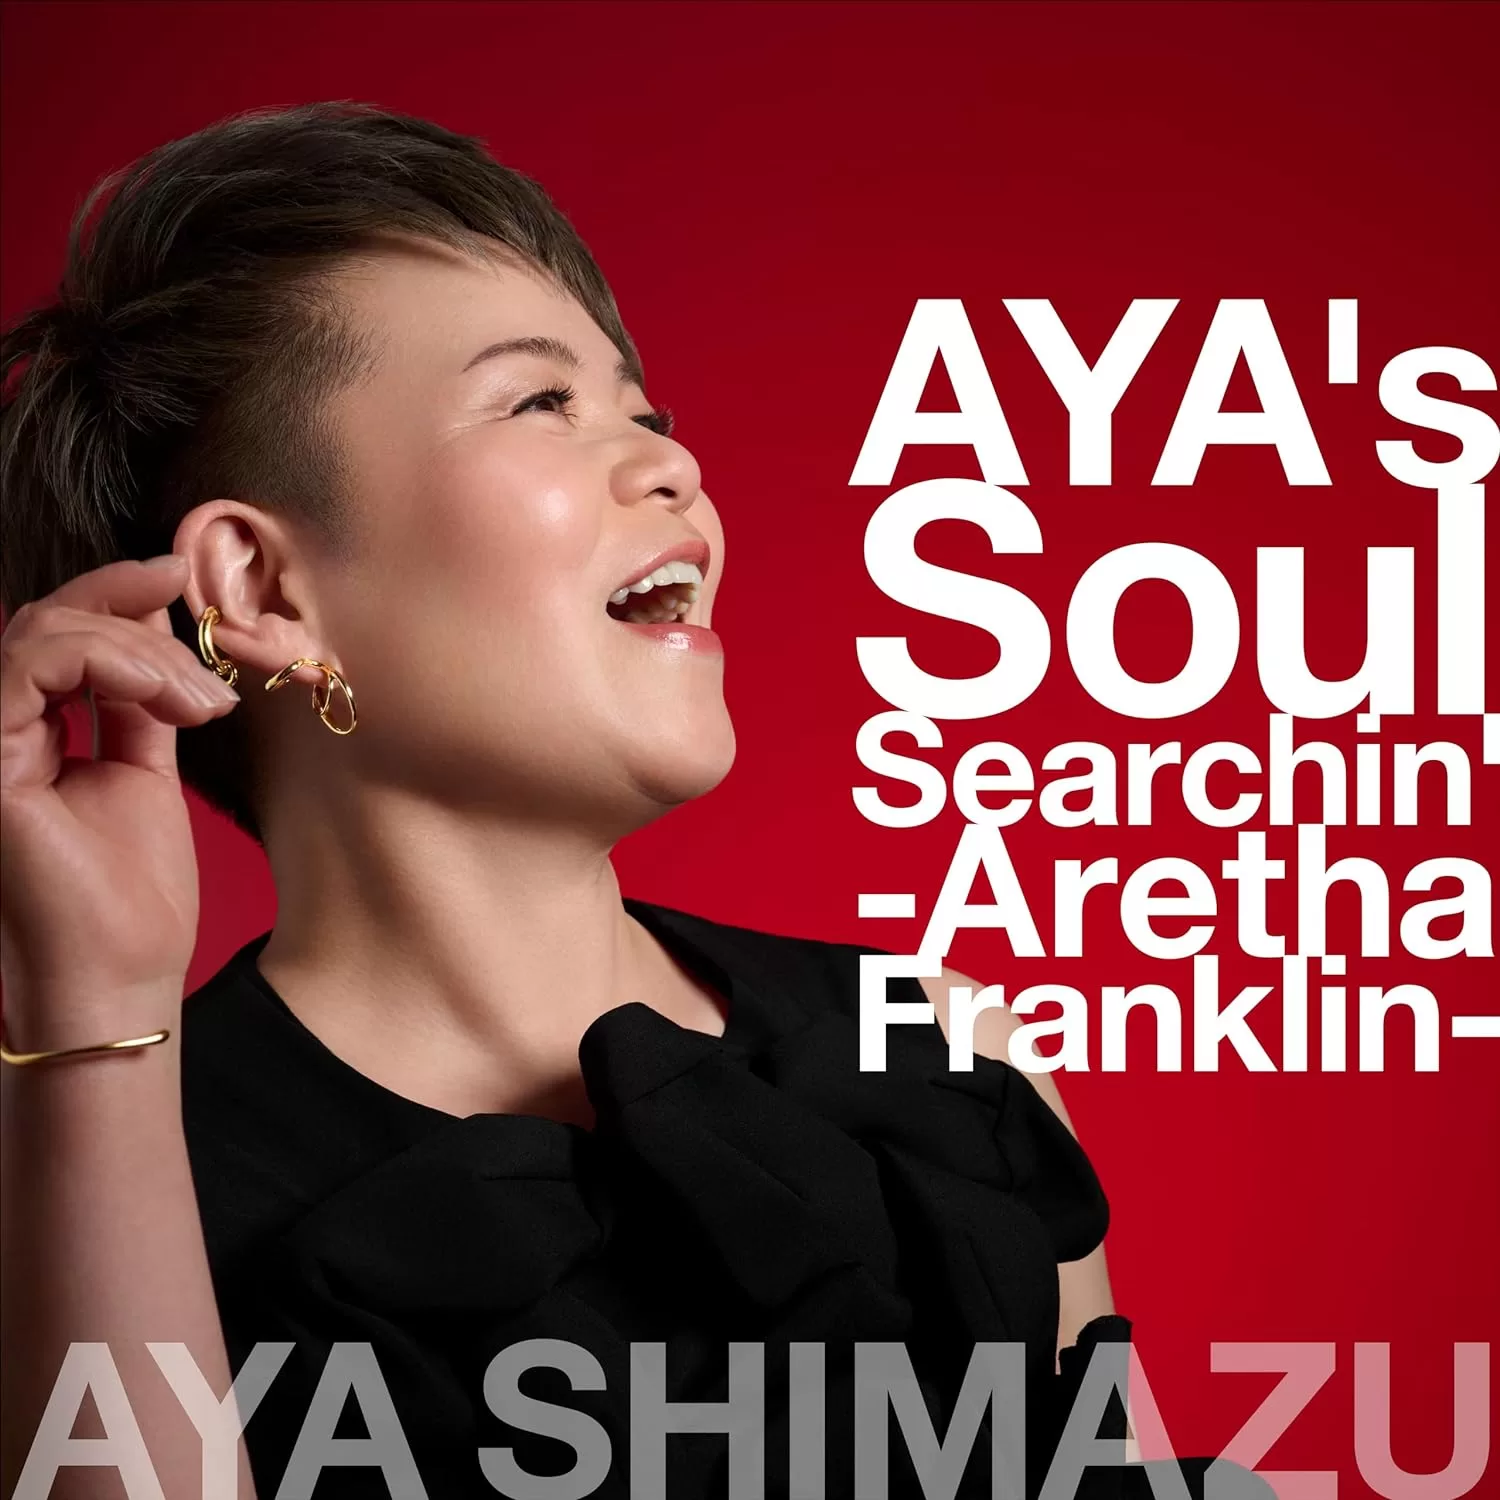 アヤ・シマヅ（島津亜矢） - AYA's Soul Searchin' -Aretha Franklin-